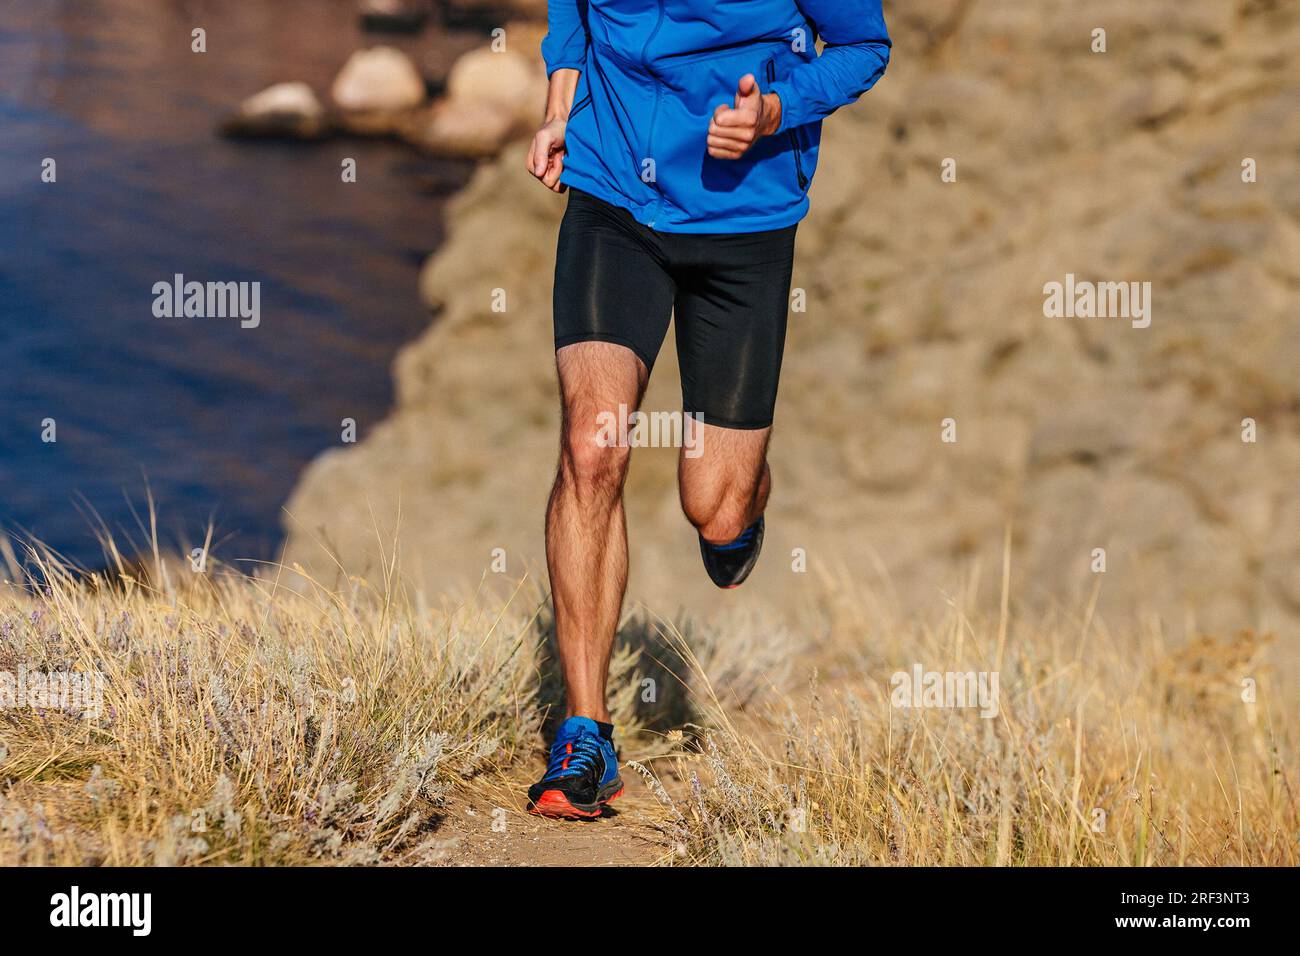 Läufer mit Vorderansicht läuft bergauf in blauer Jacke und schwarzen Strumpfhosen, auf trockenem Gras Stockfoto